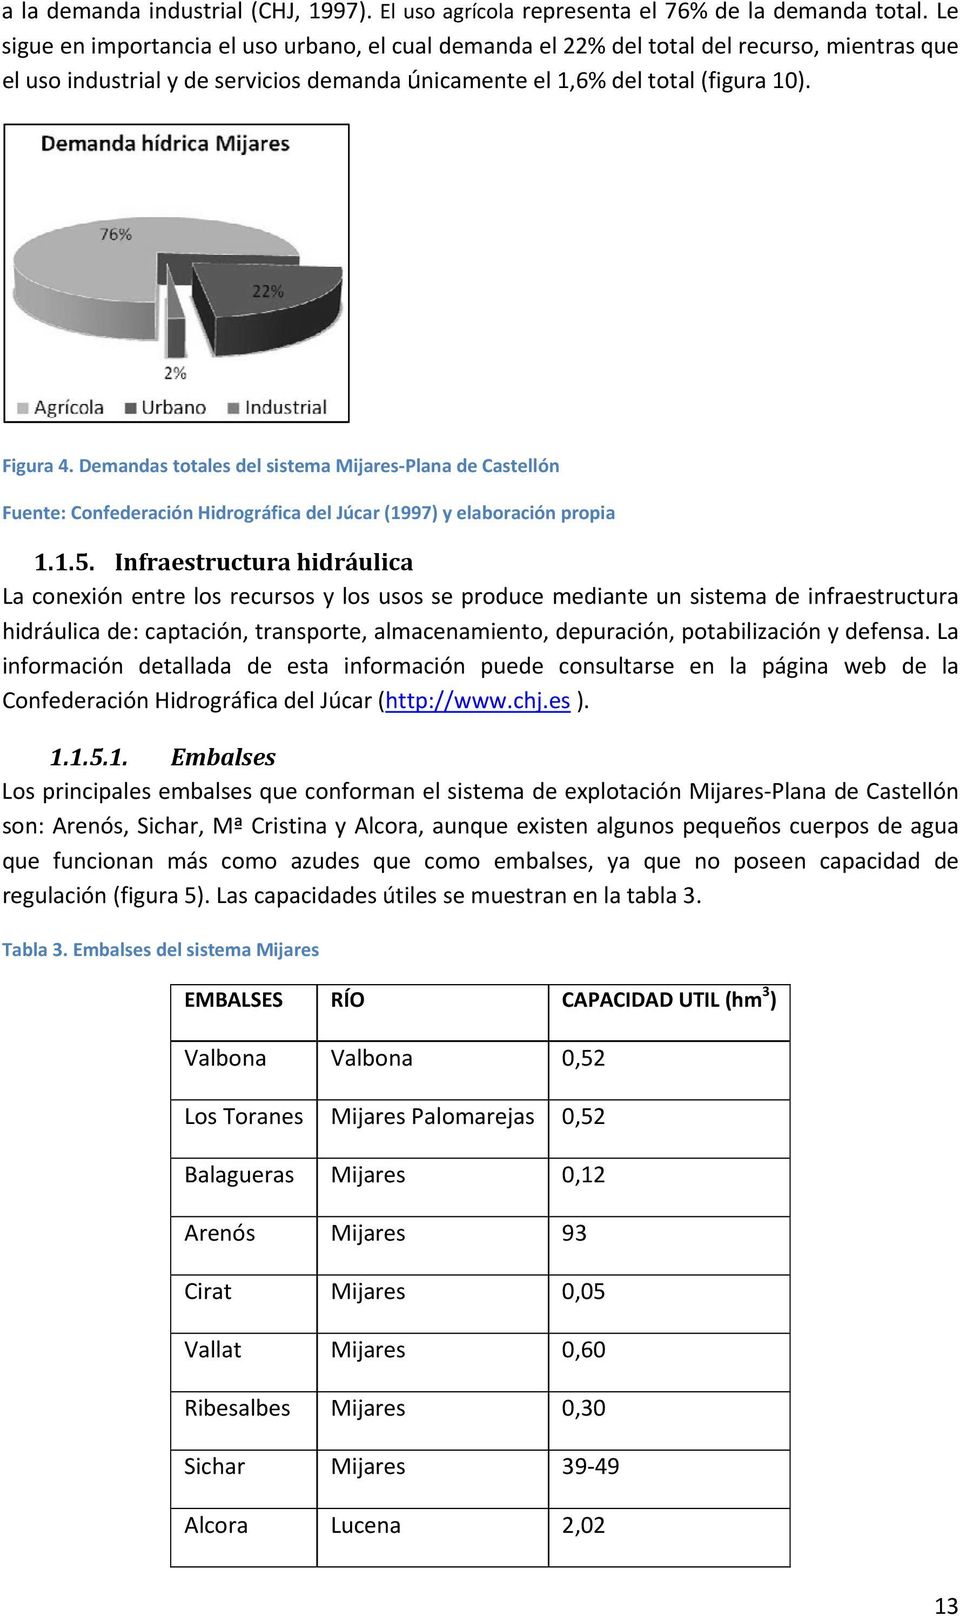 Demandas totales del sistema Mijares Plana de Castellón Fuente: Confederación Hidrográfica del Júcar (1997) y elaboración propia 1.1.5.